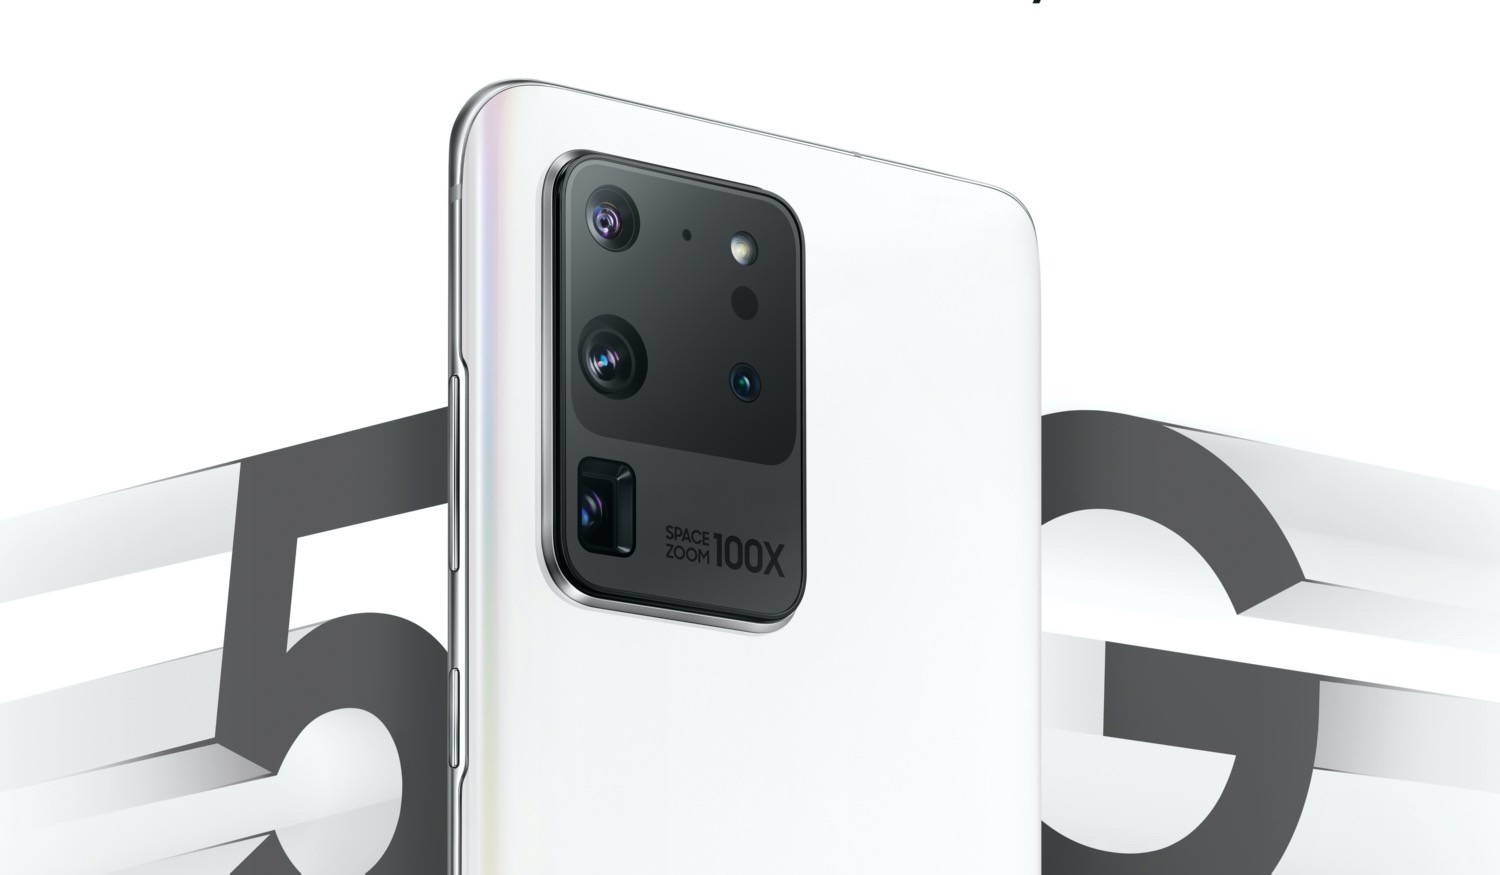 Samsung Galaxy S20 Ultra 5g 512gb Купить